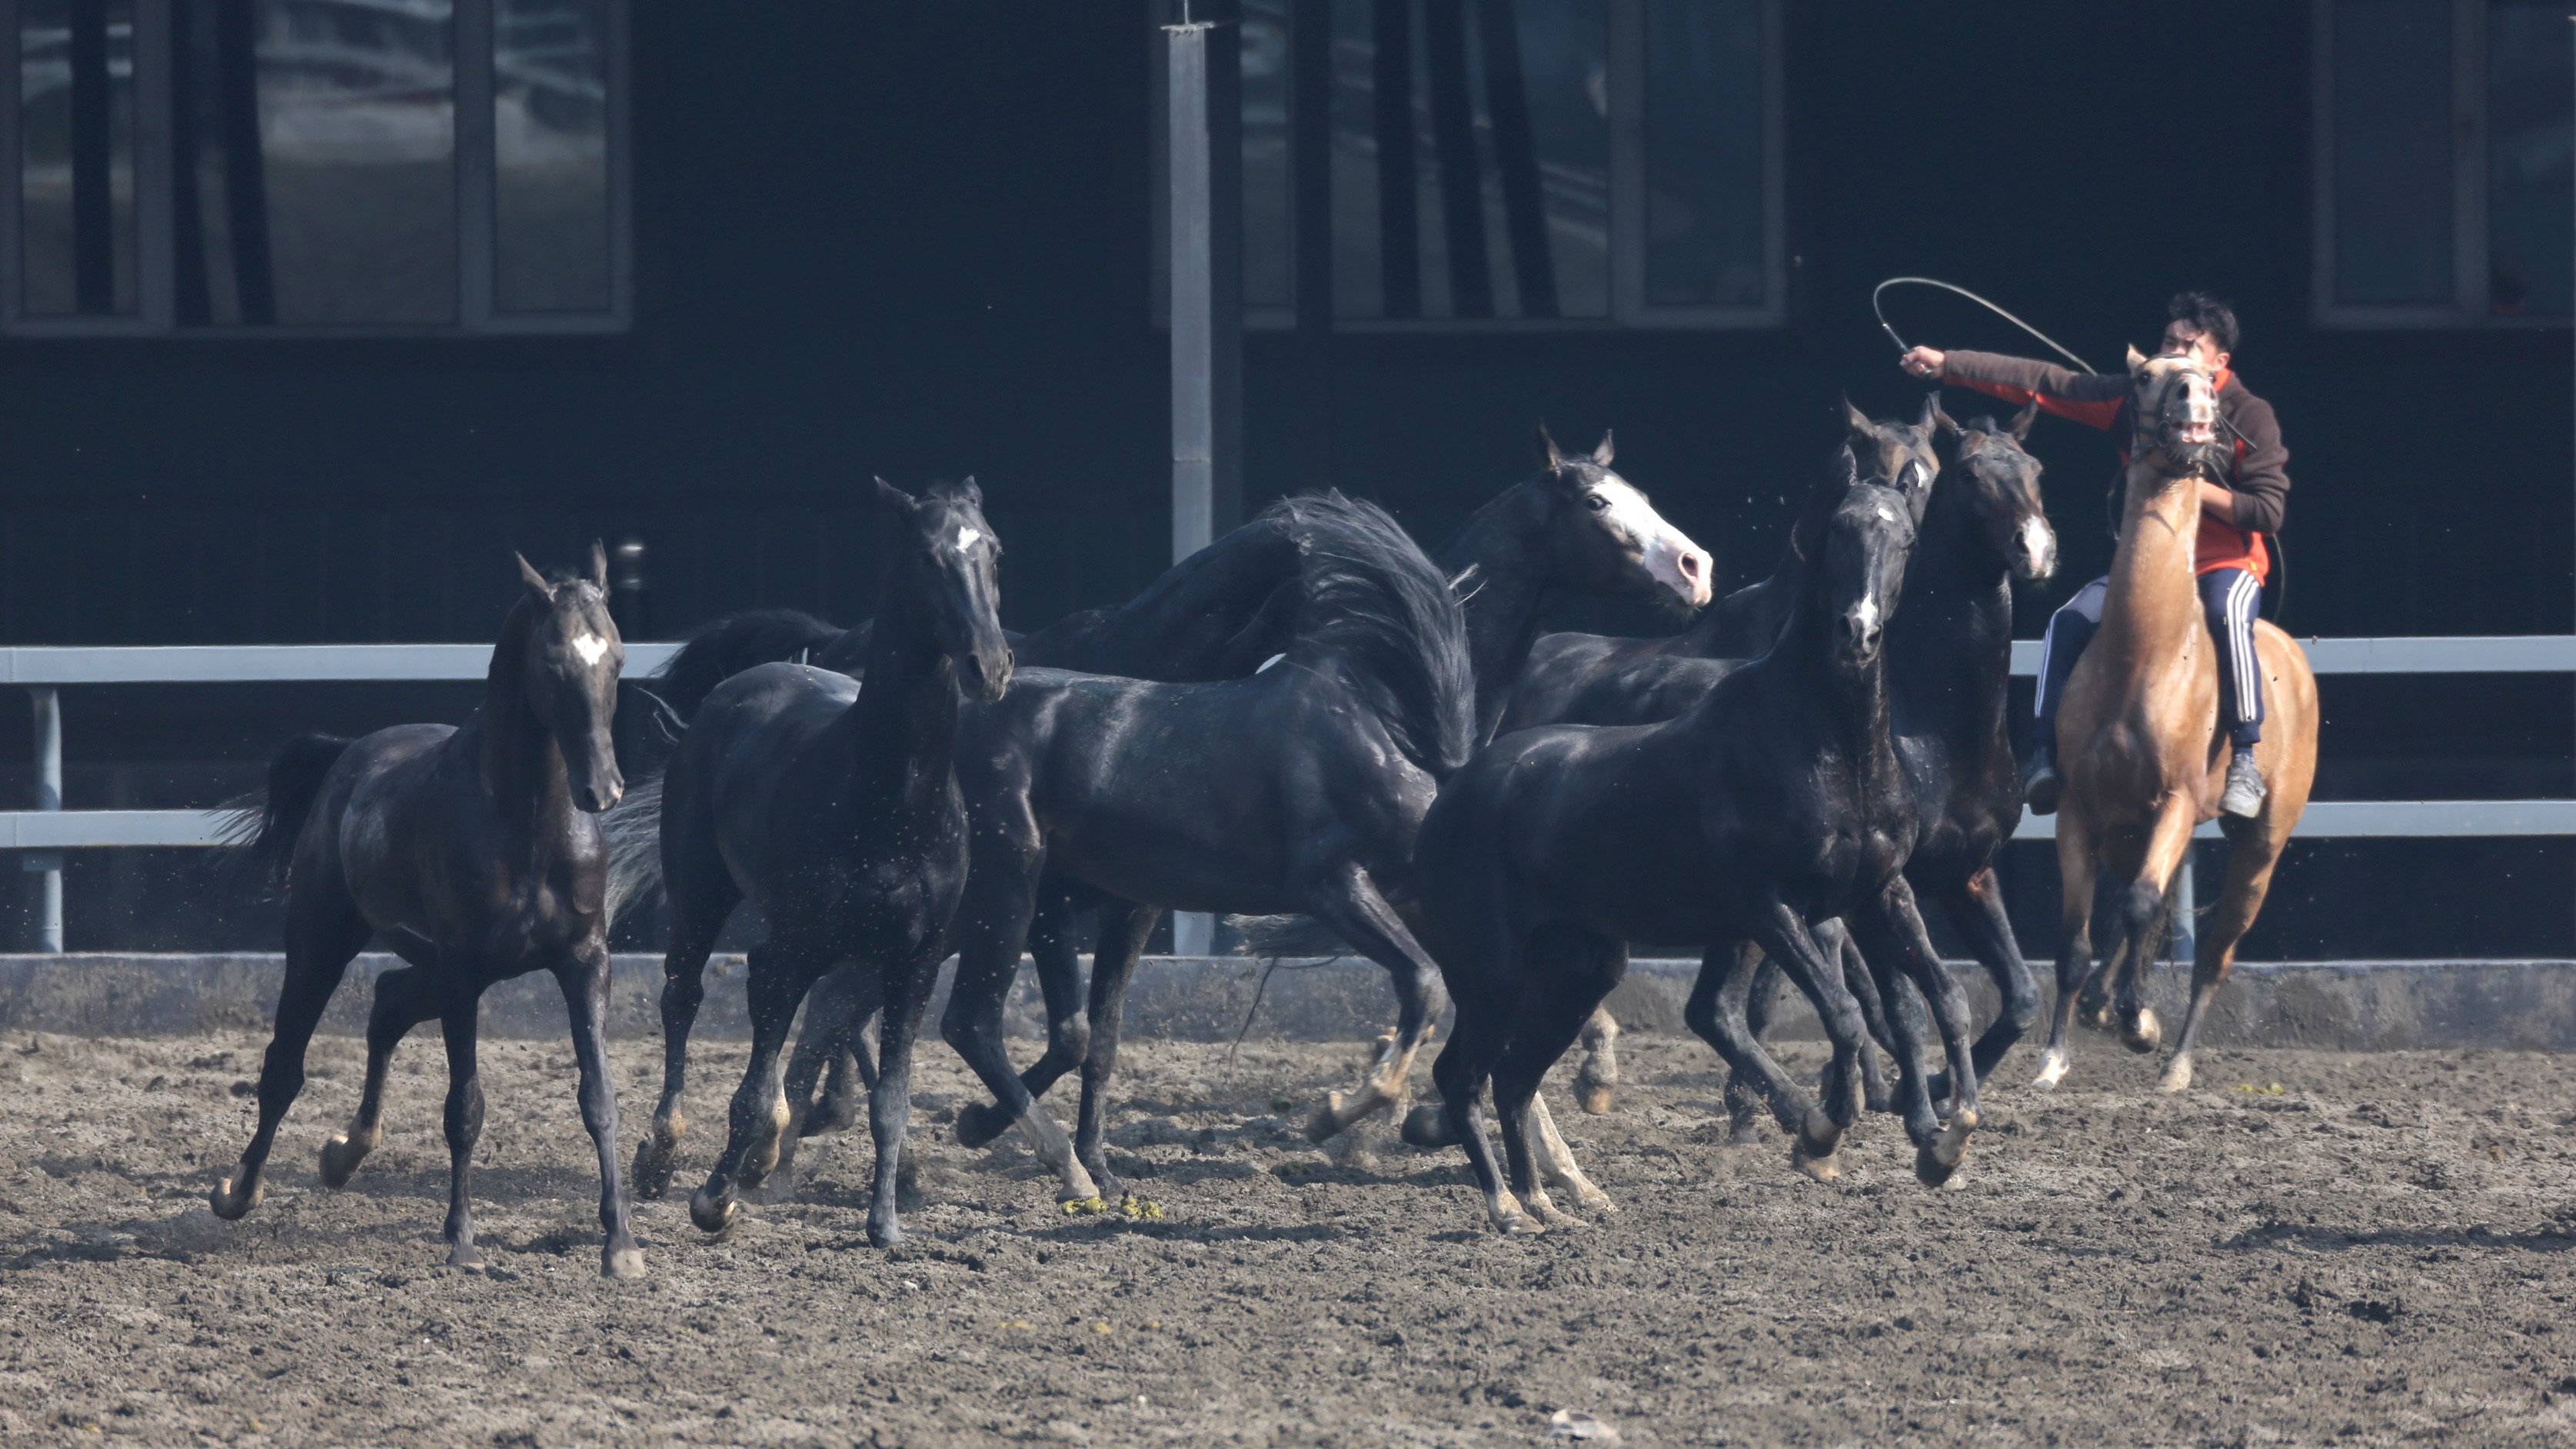 乌鲁木齐野马古生态园的汗血宝马和骑手表演。-中关村在线摄影论坛